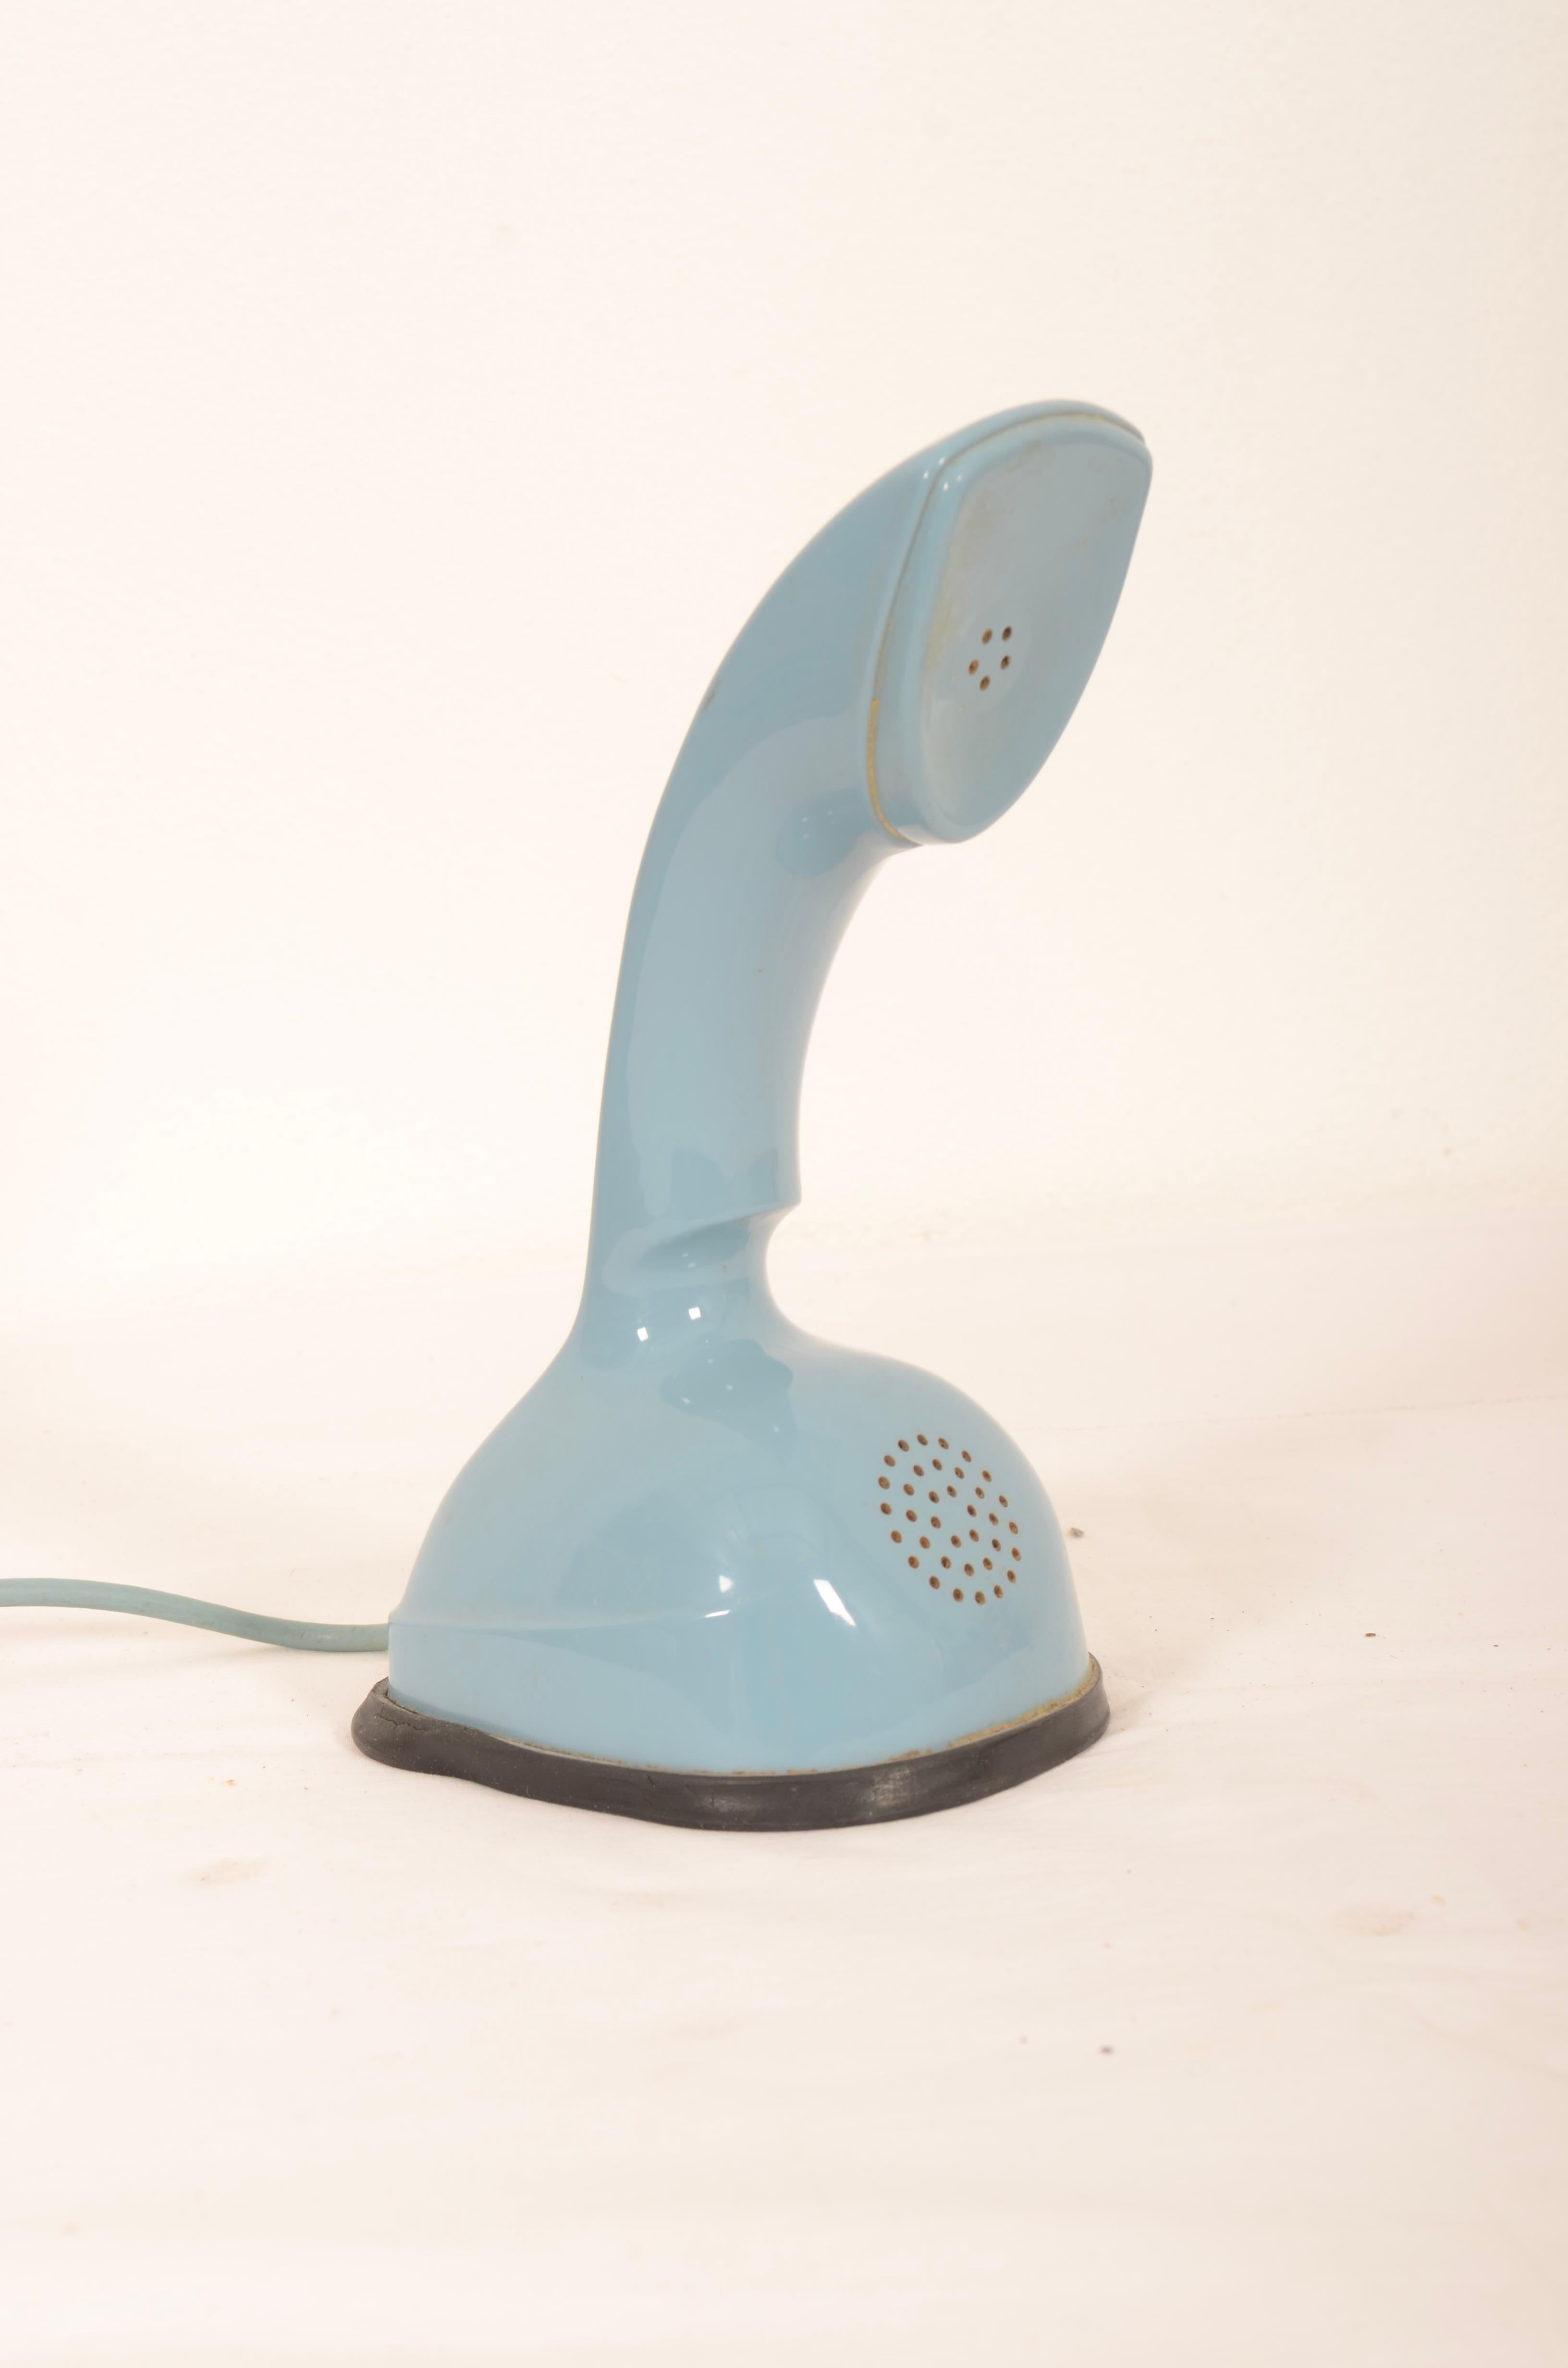 Vintage Wählscheibe mintgrün ericofone. Dies ist das Modell Cobra. Es ist aus blauem thermoplastischem ABS hergestellt.
Entworfen in den 1950er Jahren in Schweden von Hugo Blomberg, Ralph Lysell und Gösta Thames, LM Ericsson.